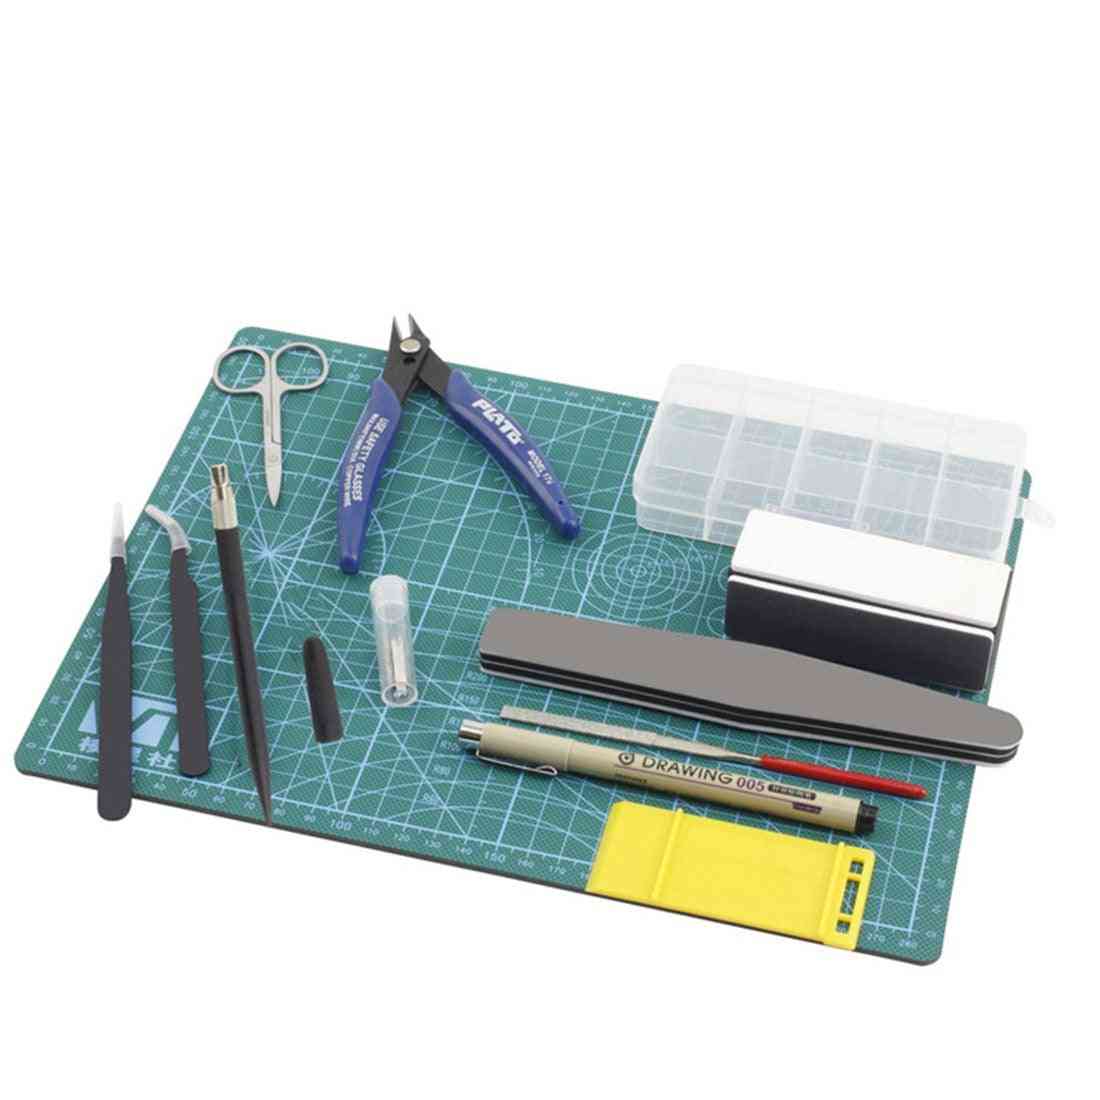 Werkzeugsatz Modellbauer Basic, Bastelset, Baukasten -